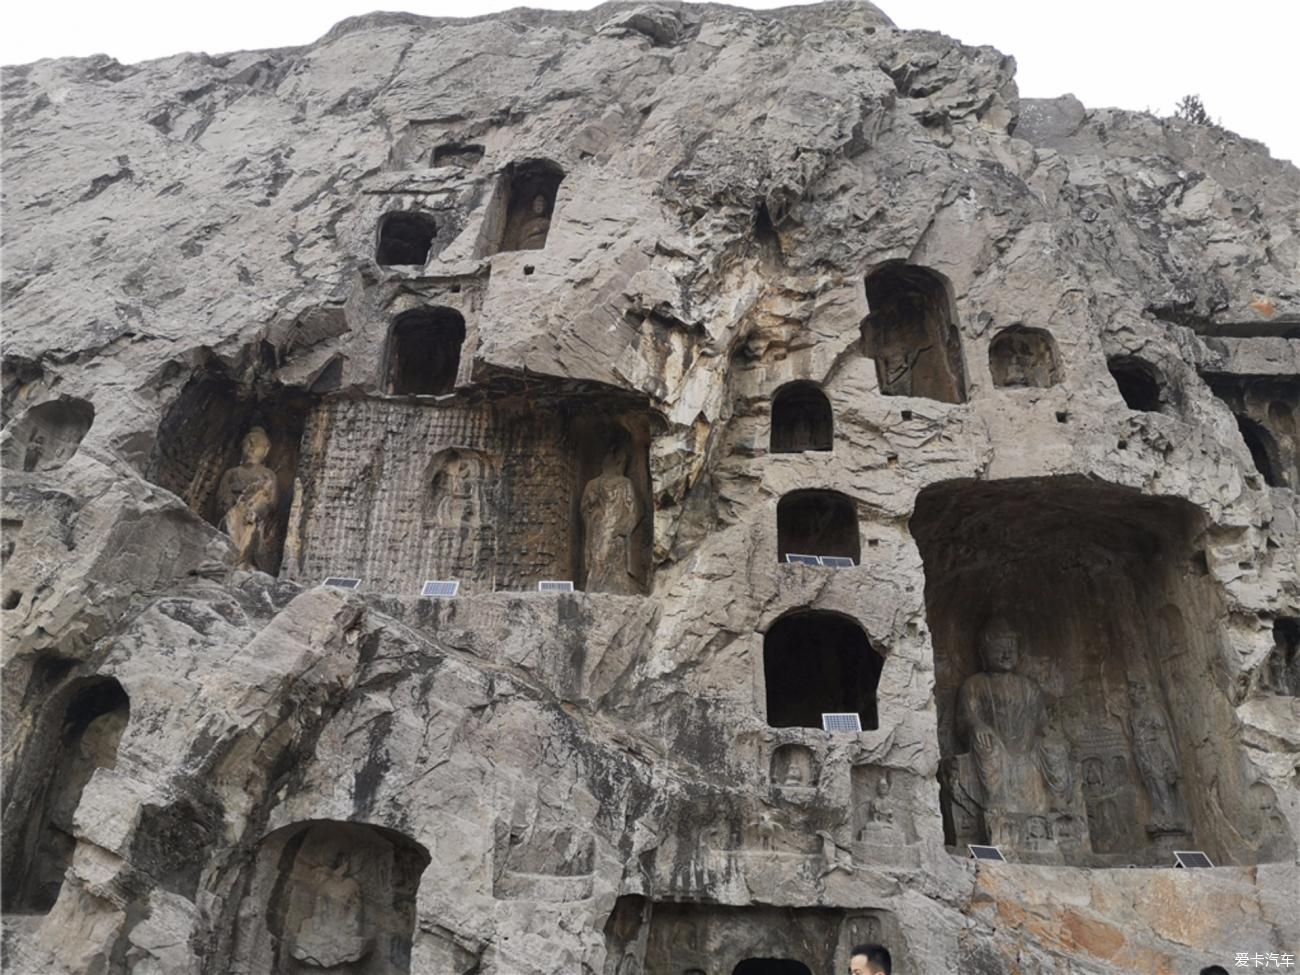 欣赏中国石刻艺术的最高峰龙门石窟